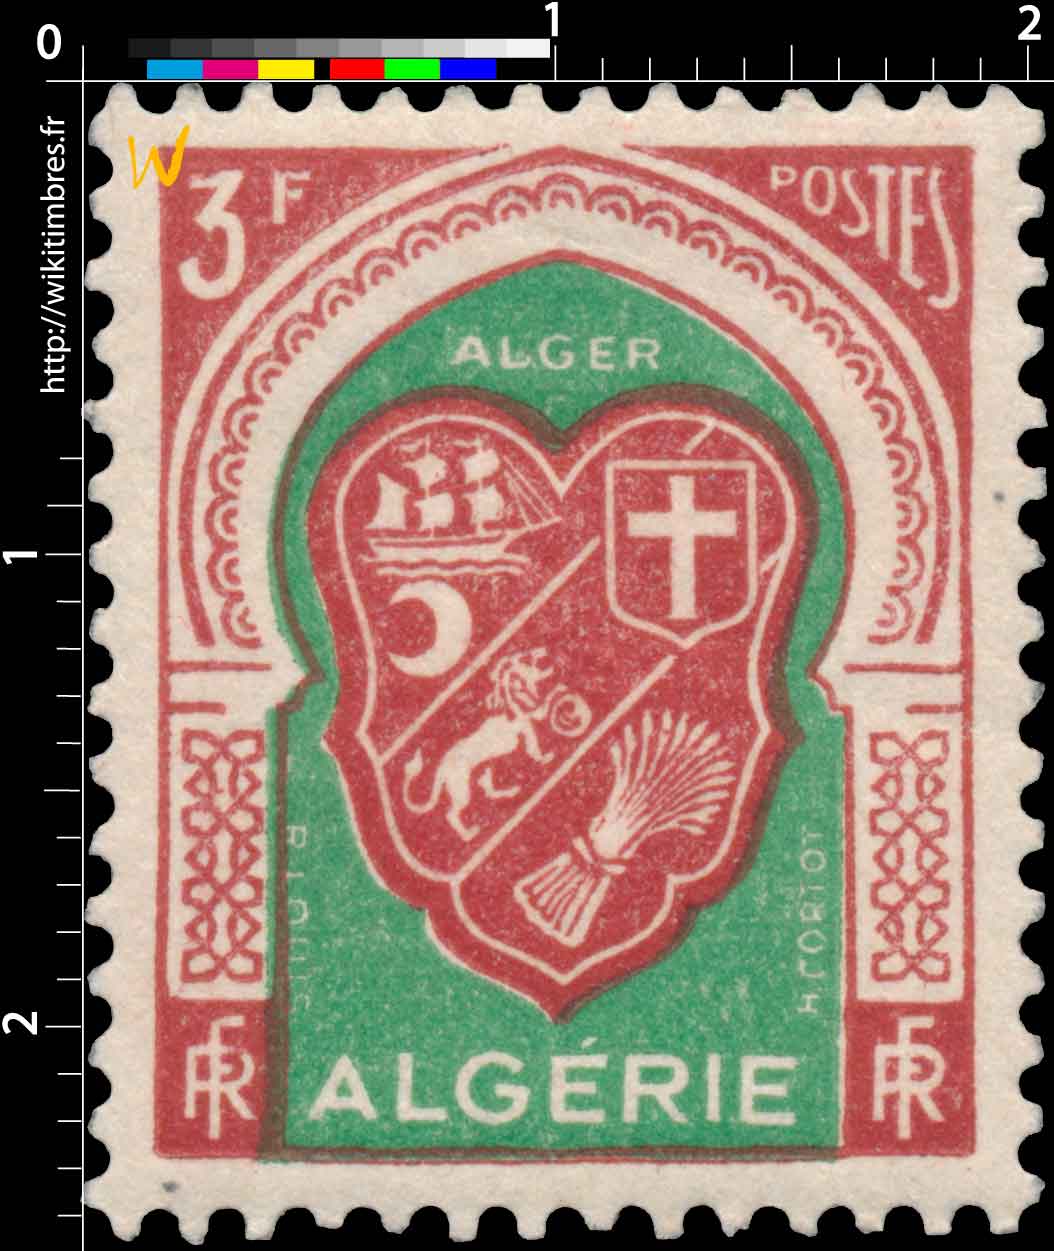 Algérie - Alger